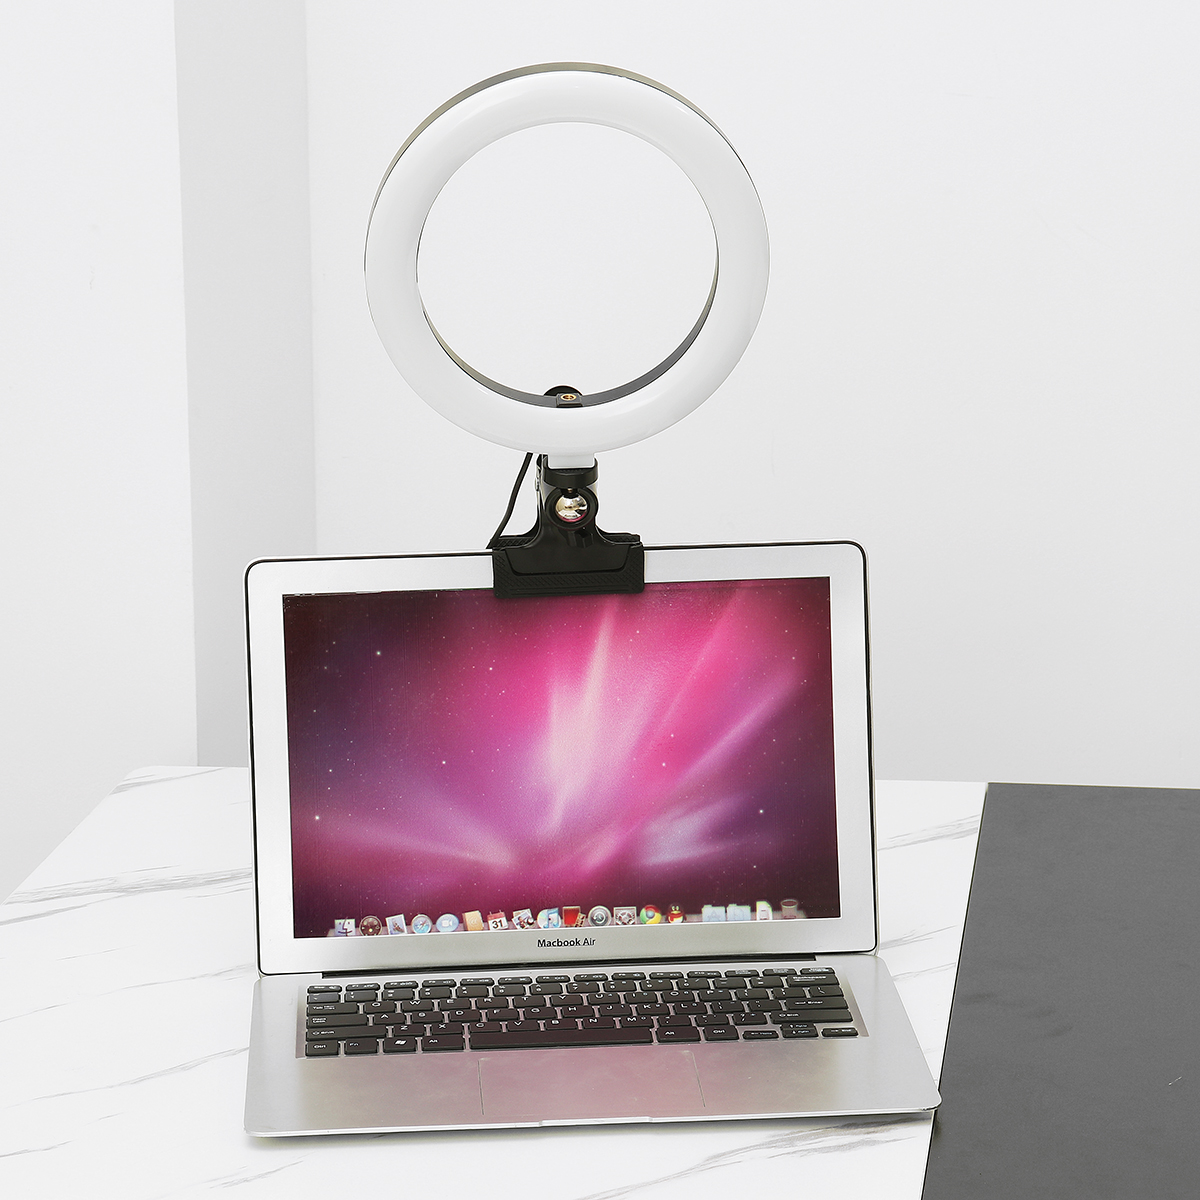 20cm-3-Modes-Fill-Light-Desktop-LED-Ring-Light-Selfie-Lighting-Beauty-with-Macbook-Table-Clip-for-Li-1866866-17